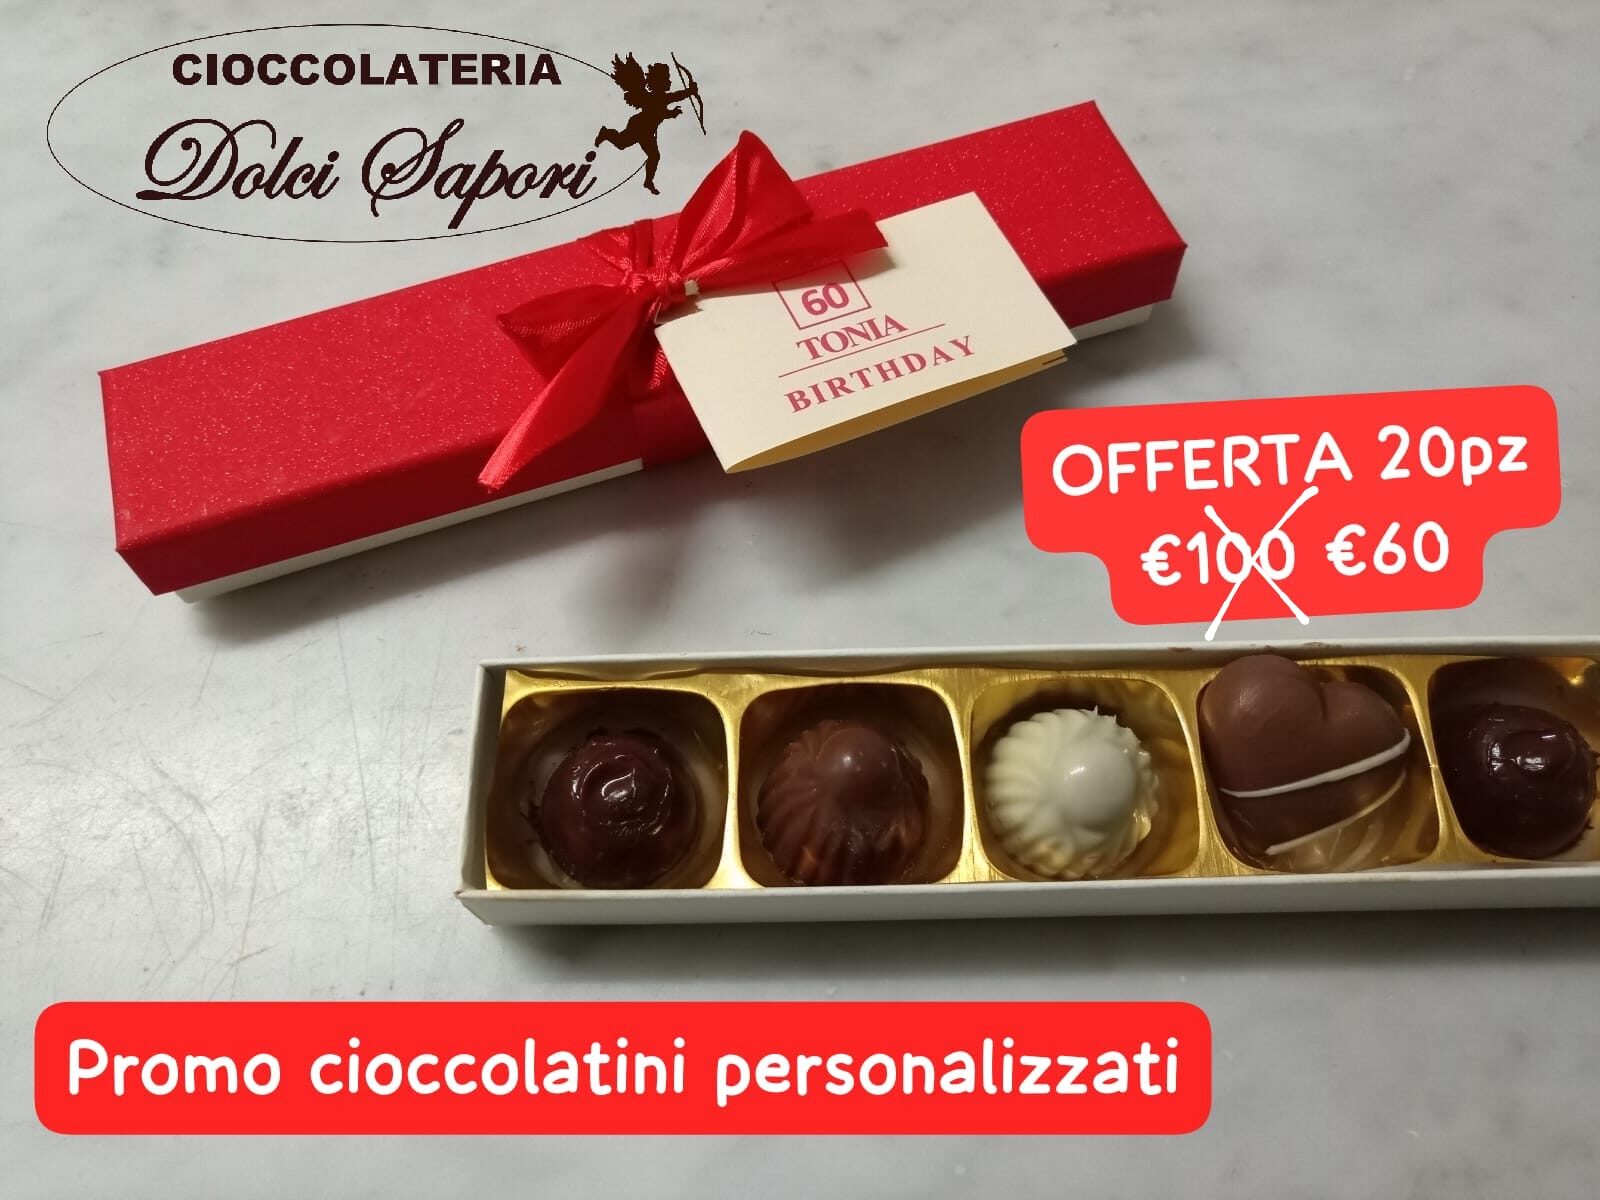 Scatolino con 5 cioccolatini + biglietto personalizzato – Dolci sapori  cioccolateria